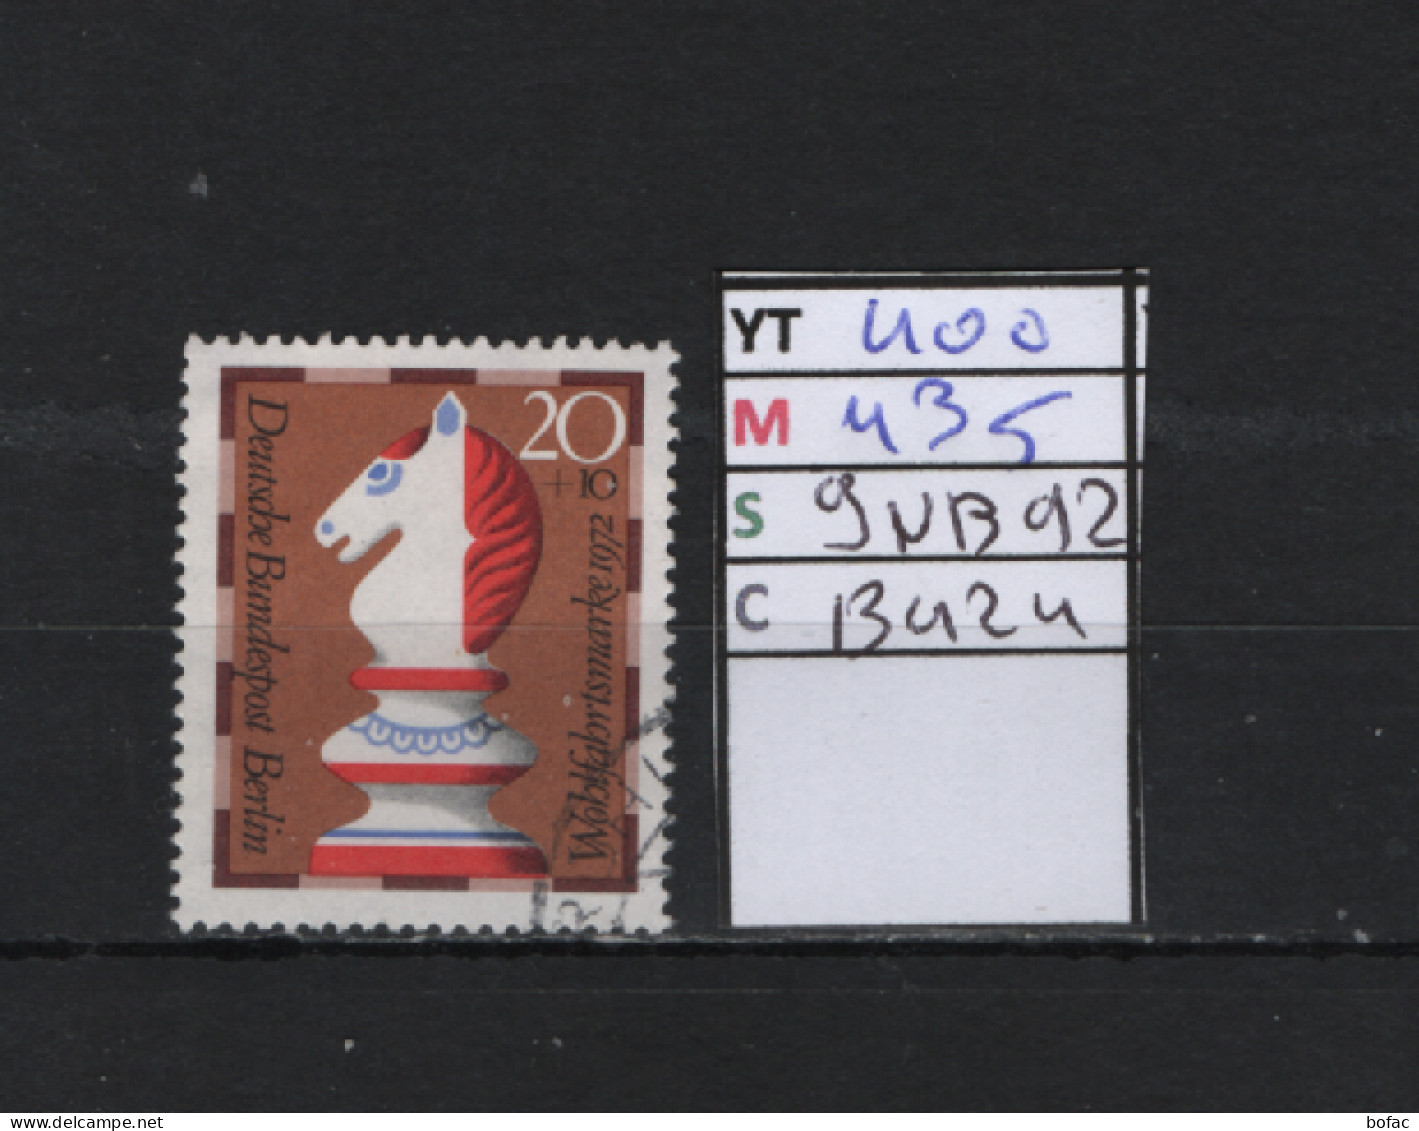 P. FIXE Obl 400 YT 435 MIC 9NB92 SCO B424 GIB Cavalier  Pieces De Jeux D'échecs 1972 *Berlin* 75/03 - Used Stamps